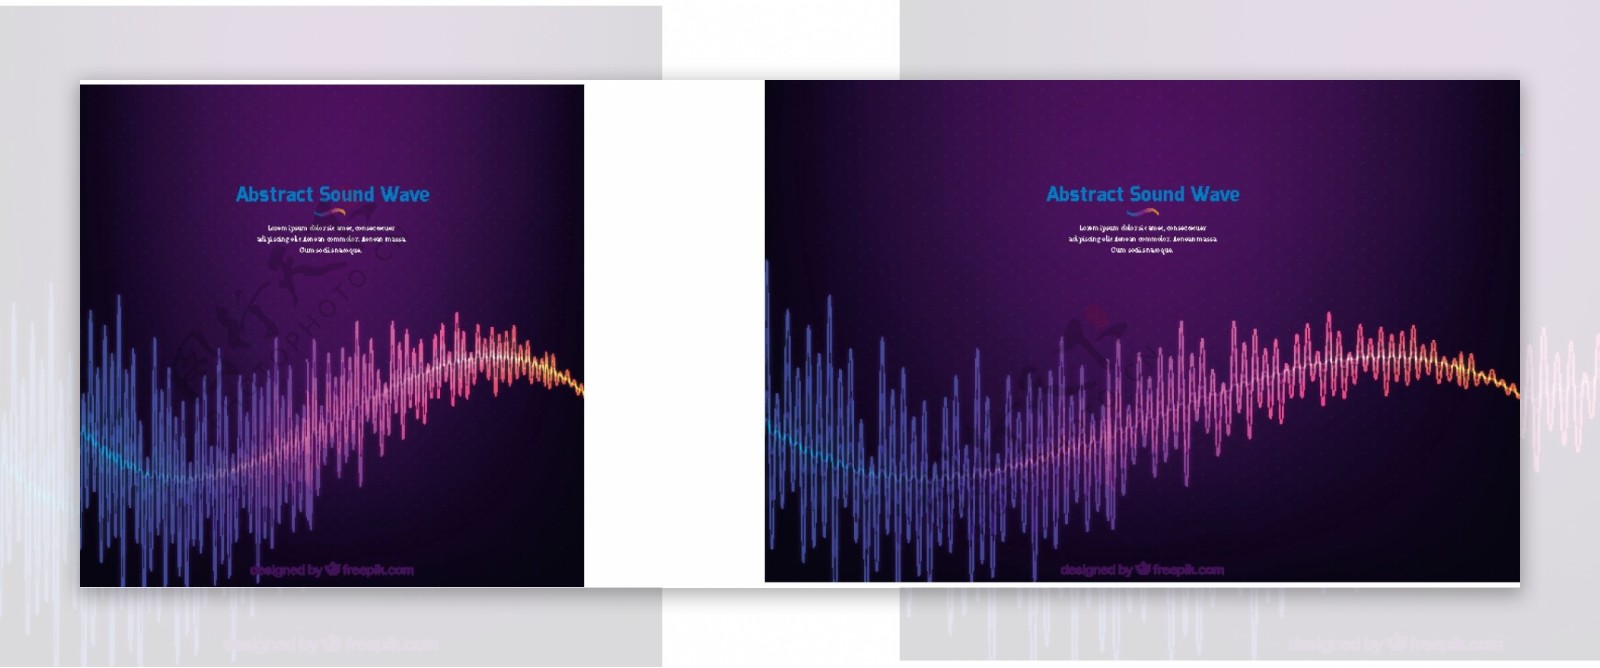 紫色背景与彩色抽象的声波图案